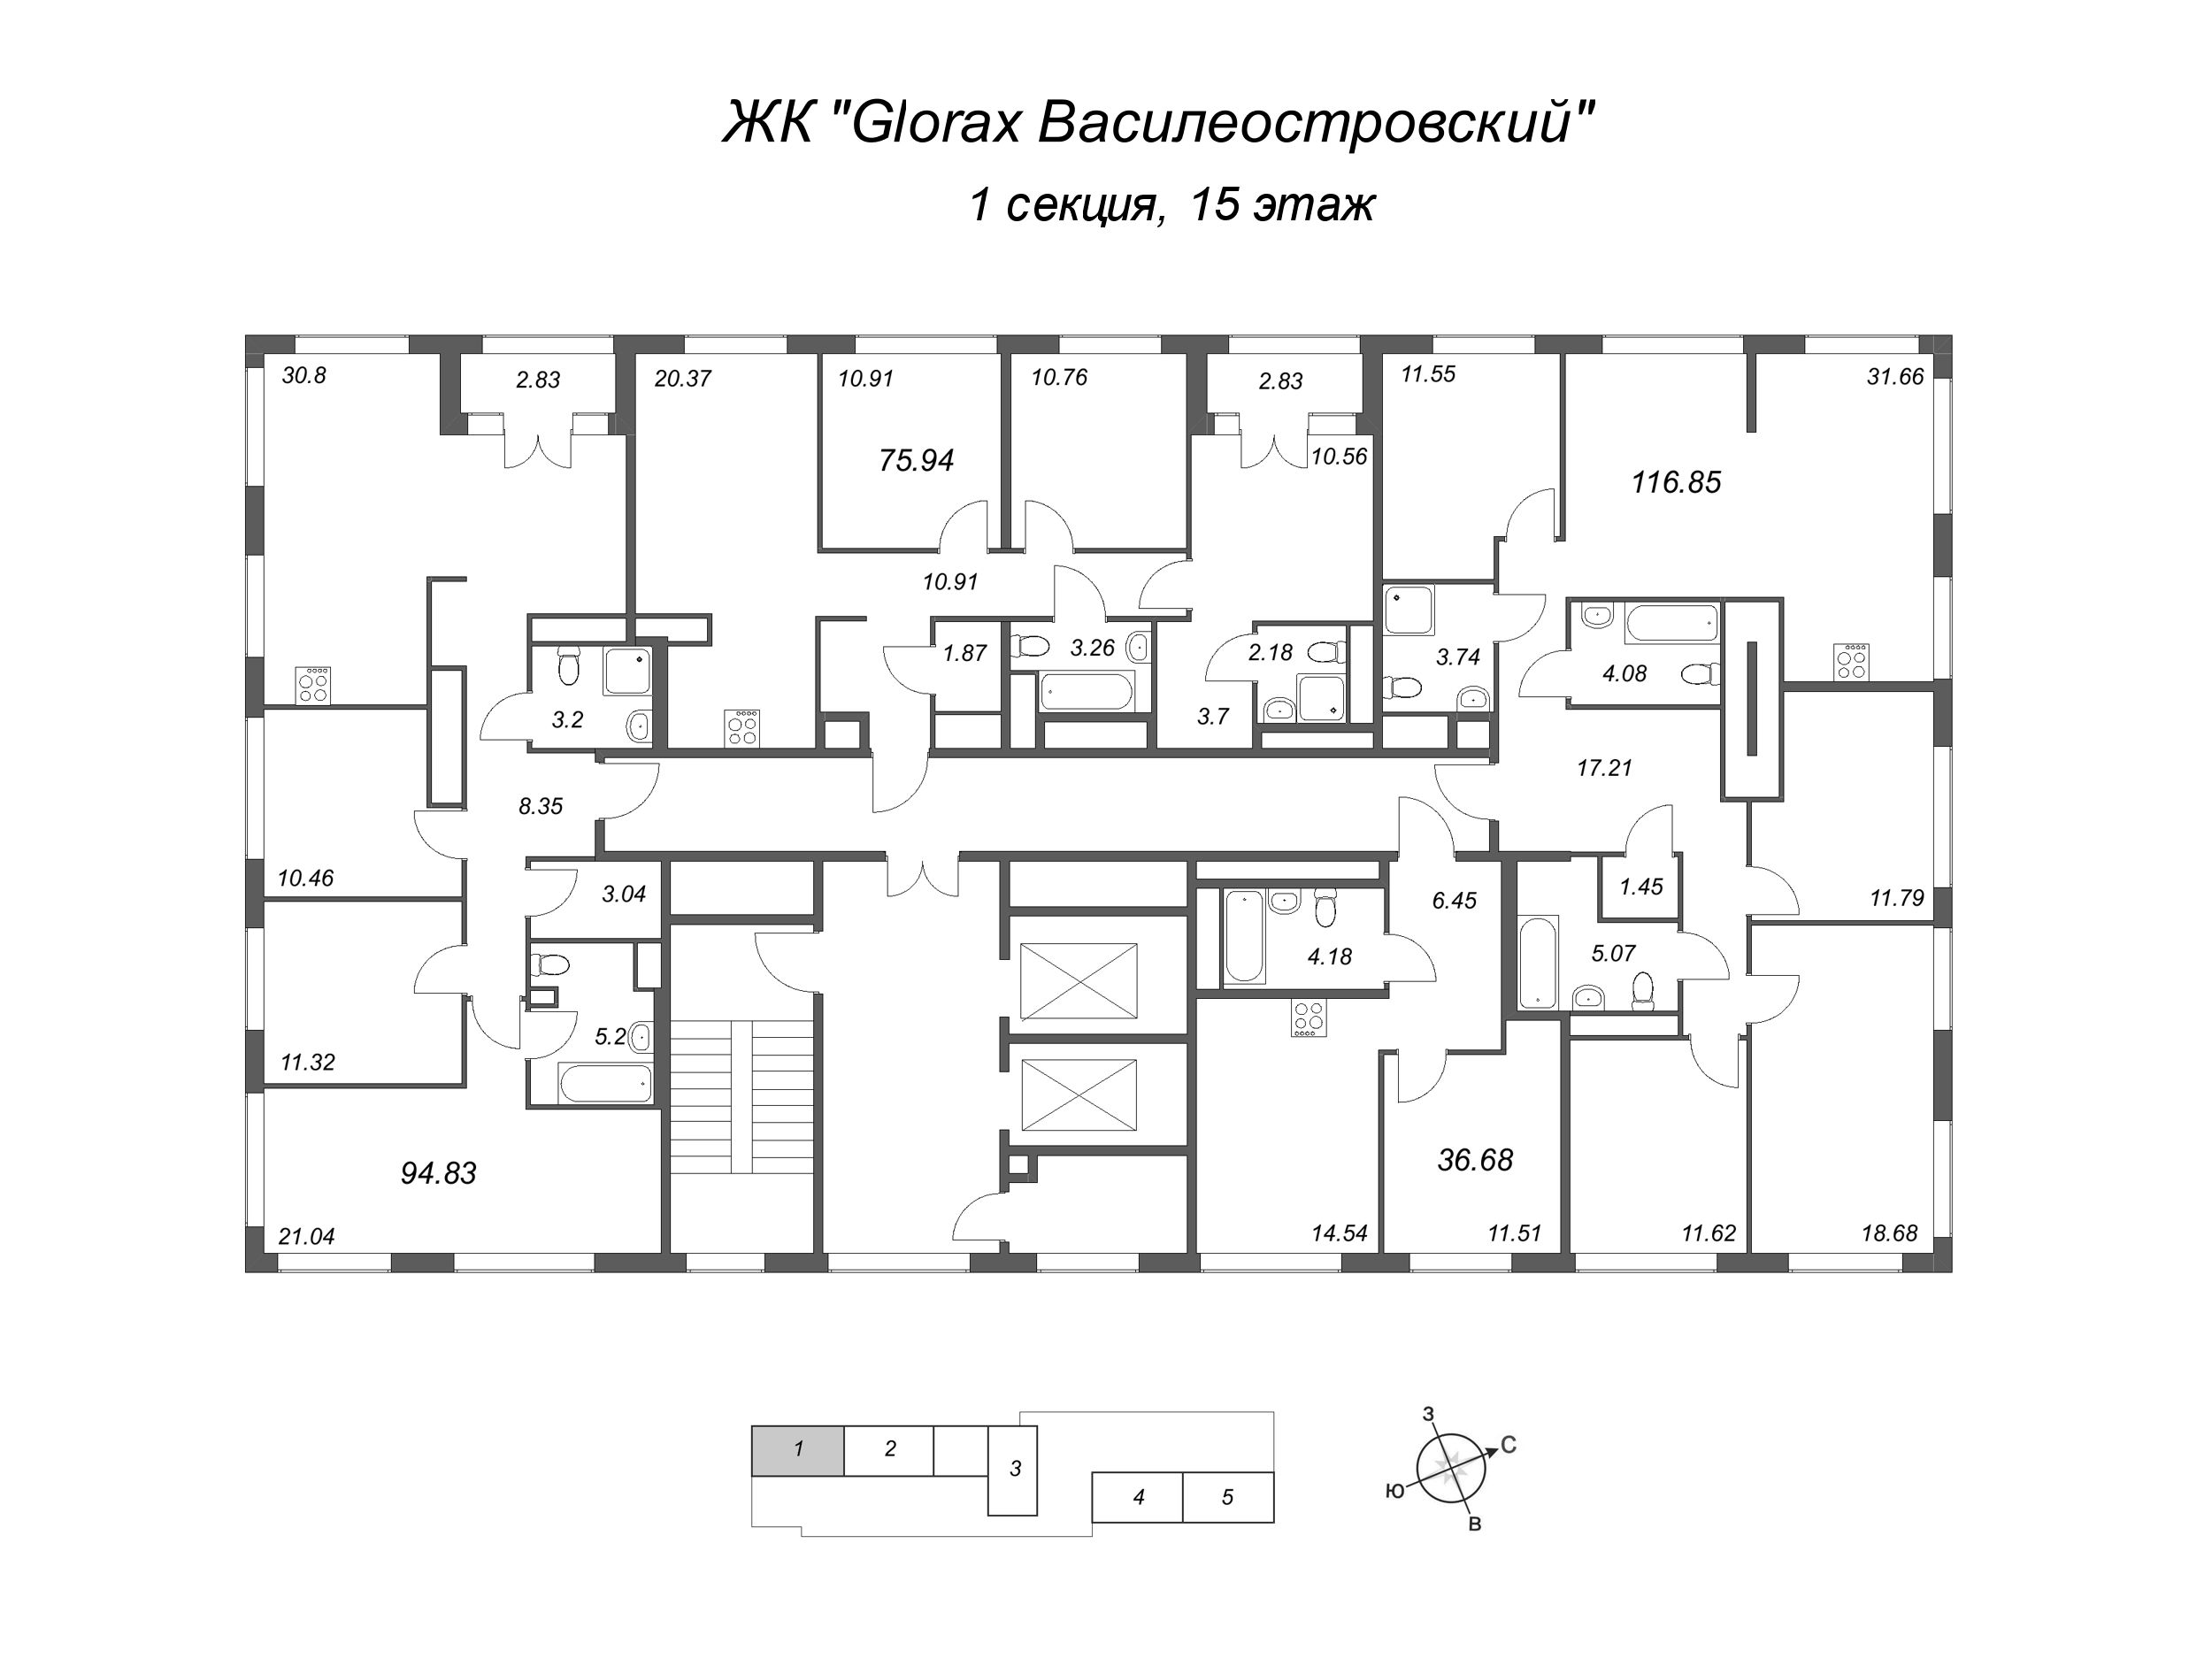 4-комнатная (Евро) квартира, 94.83 м² в ЖК "GloraX Василеостровский" - планировка этажа